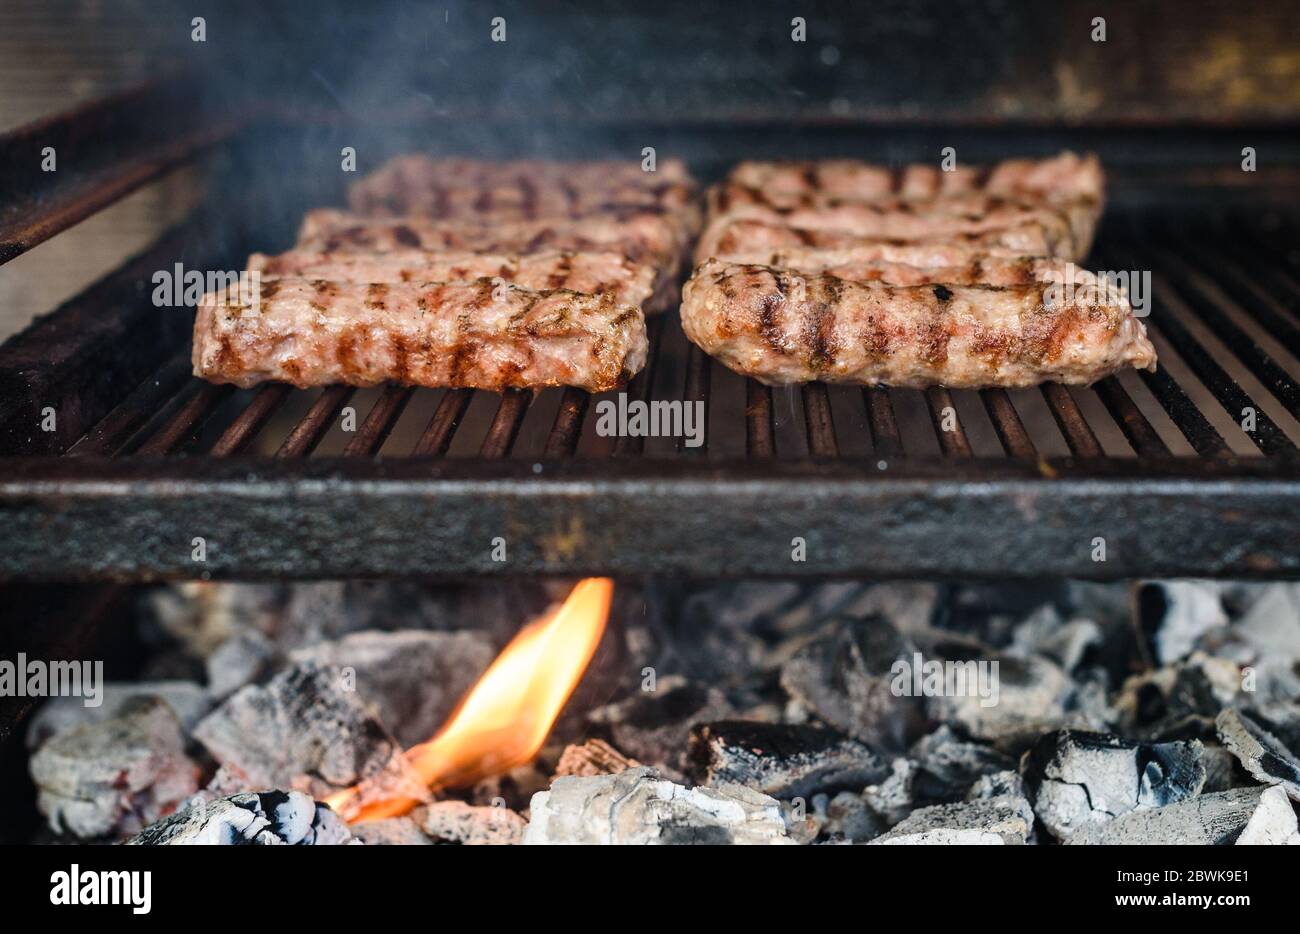 Grillen von Fleisch auf dem Grill mit heißer Kohle. Vorbereitung, Kochen Cevapcici, Kebabs, Country-Wurst auf Holzkohle Grill Grill im Freien Kamin. Tr Stockfoto